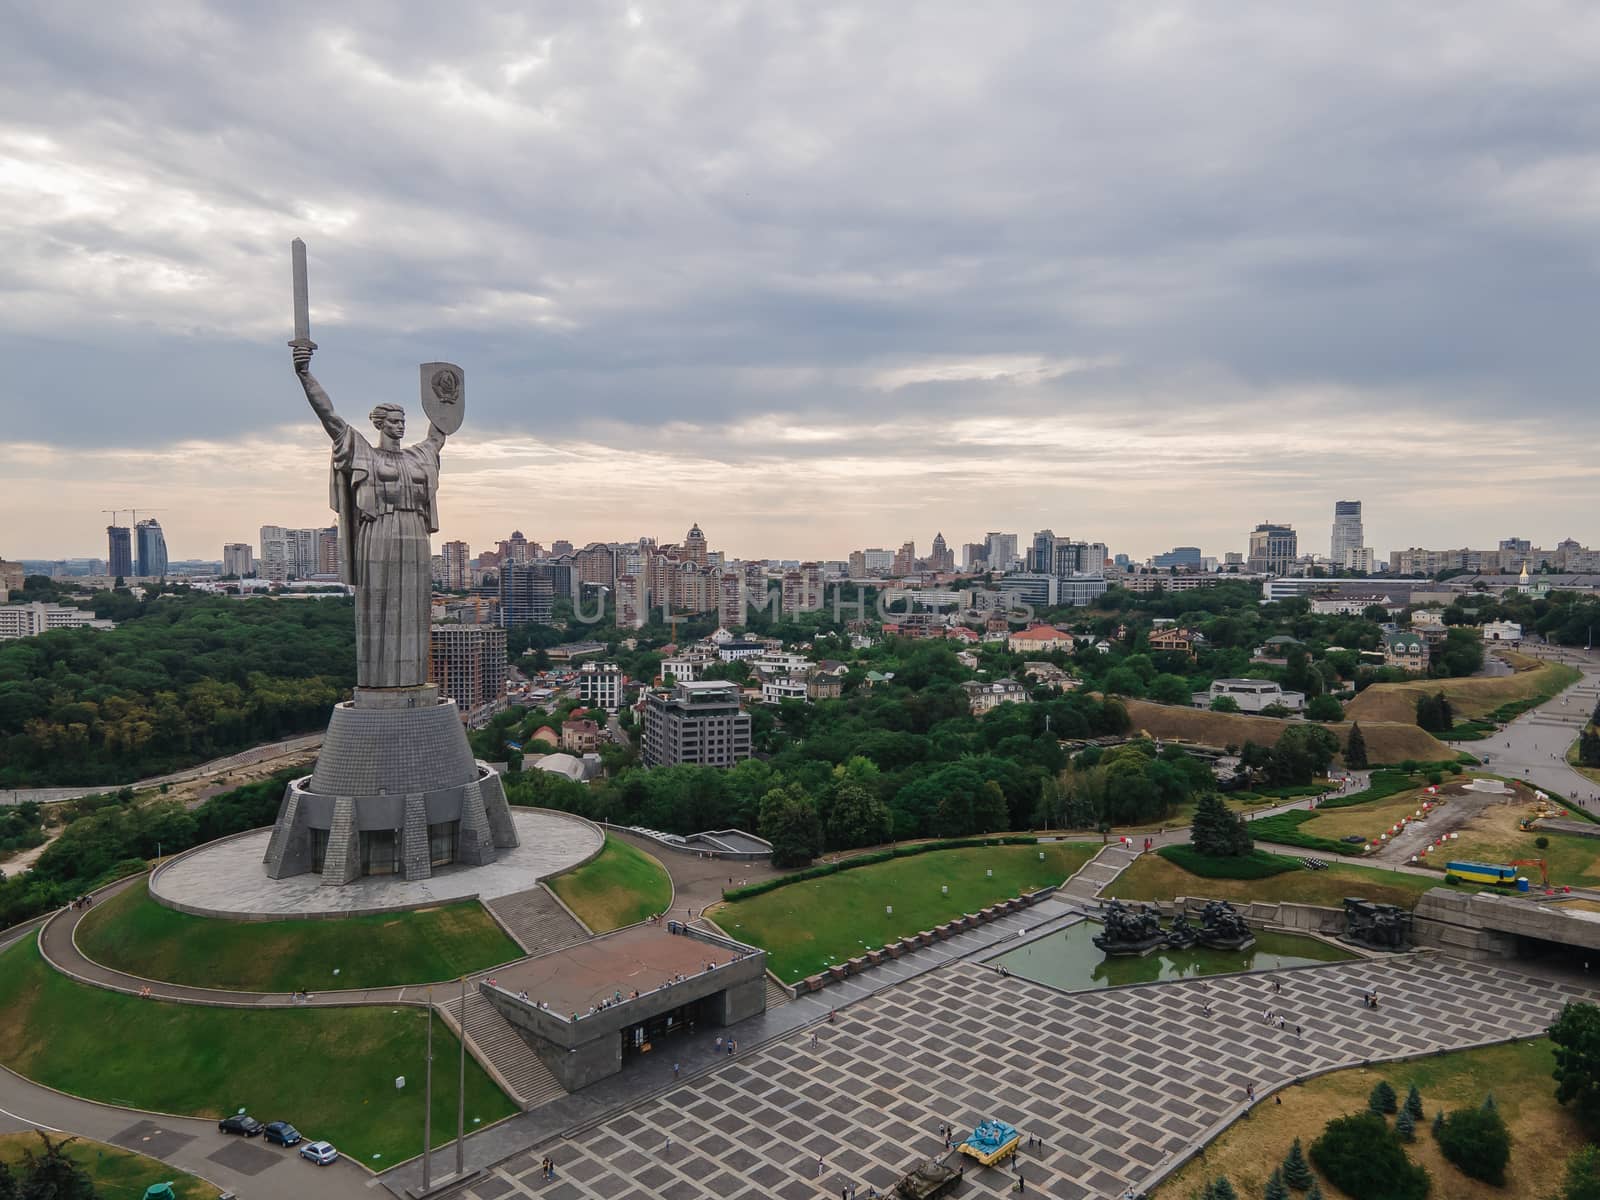 Aerial view of the Motherland Monument in Kyiv, Ukraine by Mykola_Kondrashev